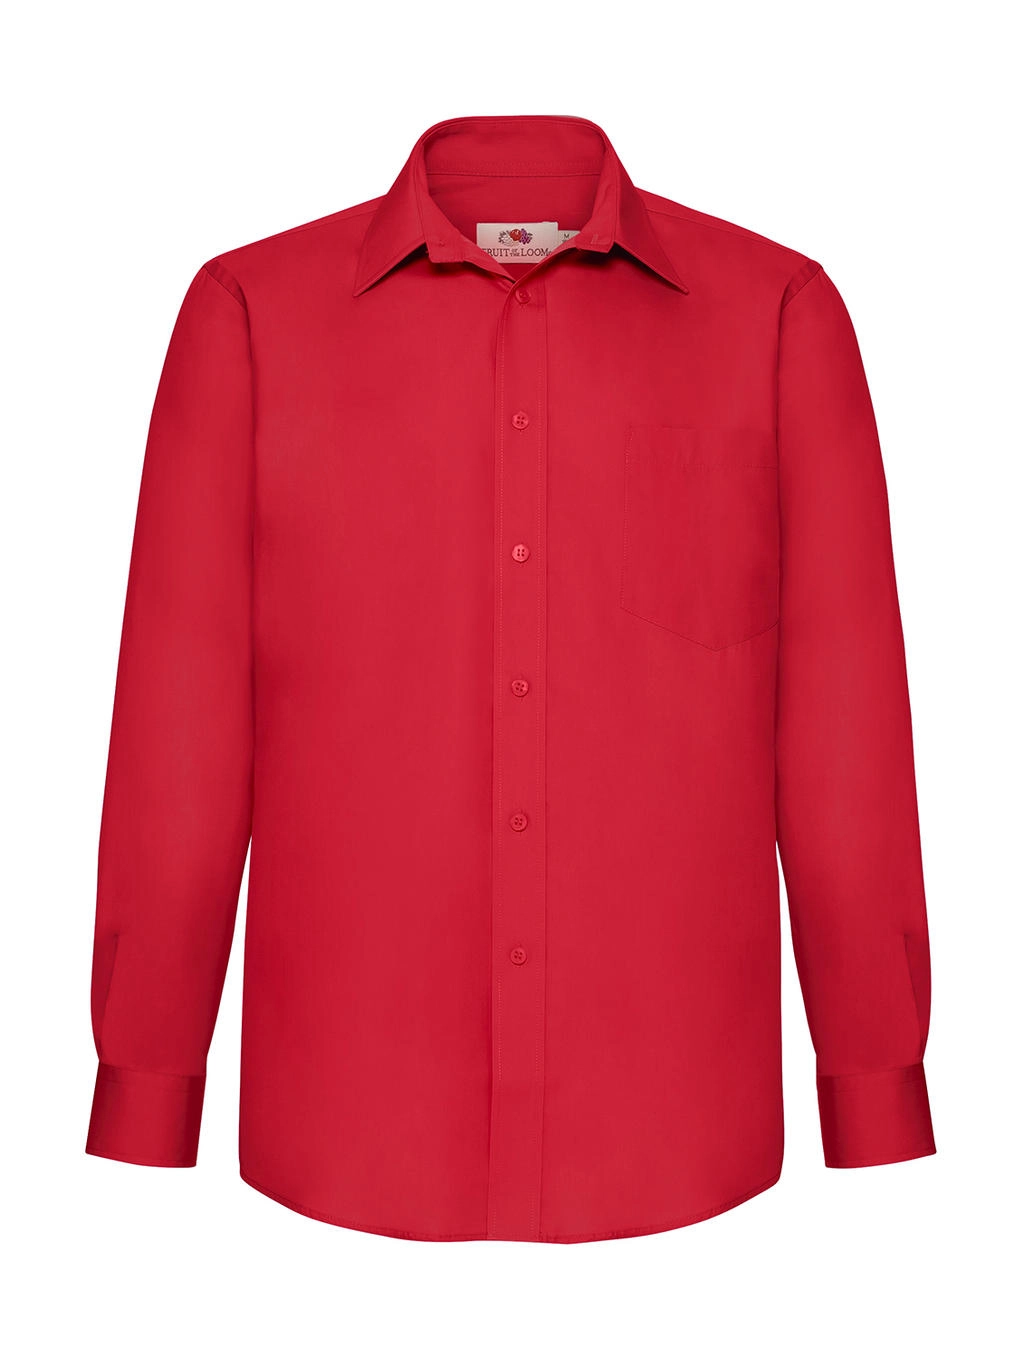 Poplin Shirt LS zum Besticken und Bedrucken in der Farbe Red mit Ihren Logo, Schriftzug oder Motiv.